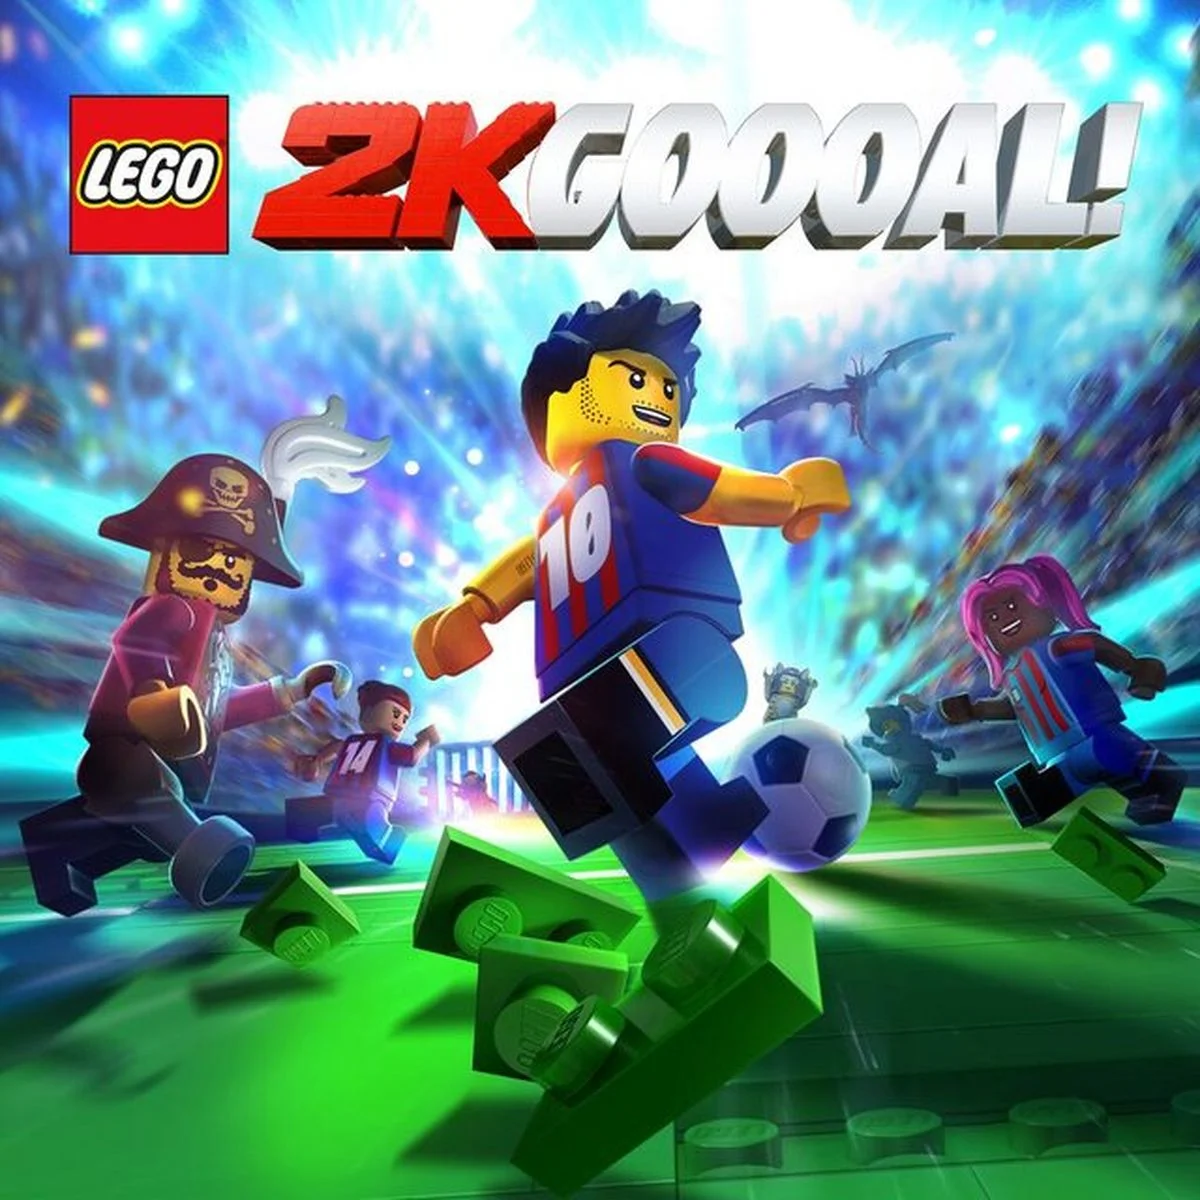 Арт неанонсированной LEGO 2K Goooal!  обнаружили в PS Store - фото 1